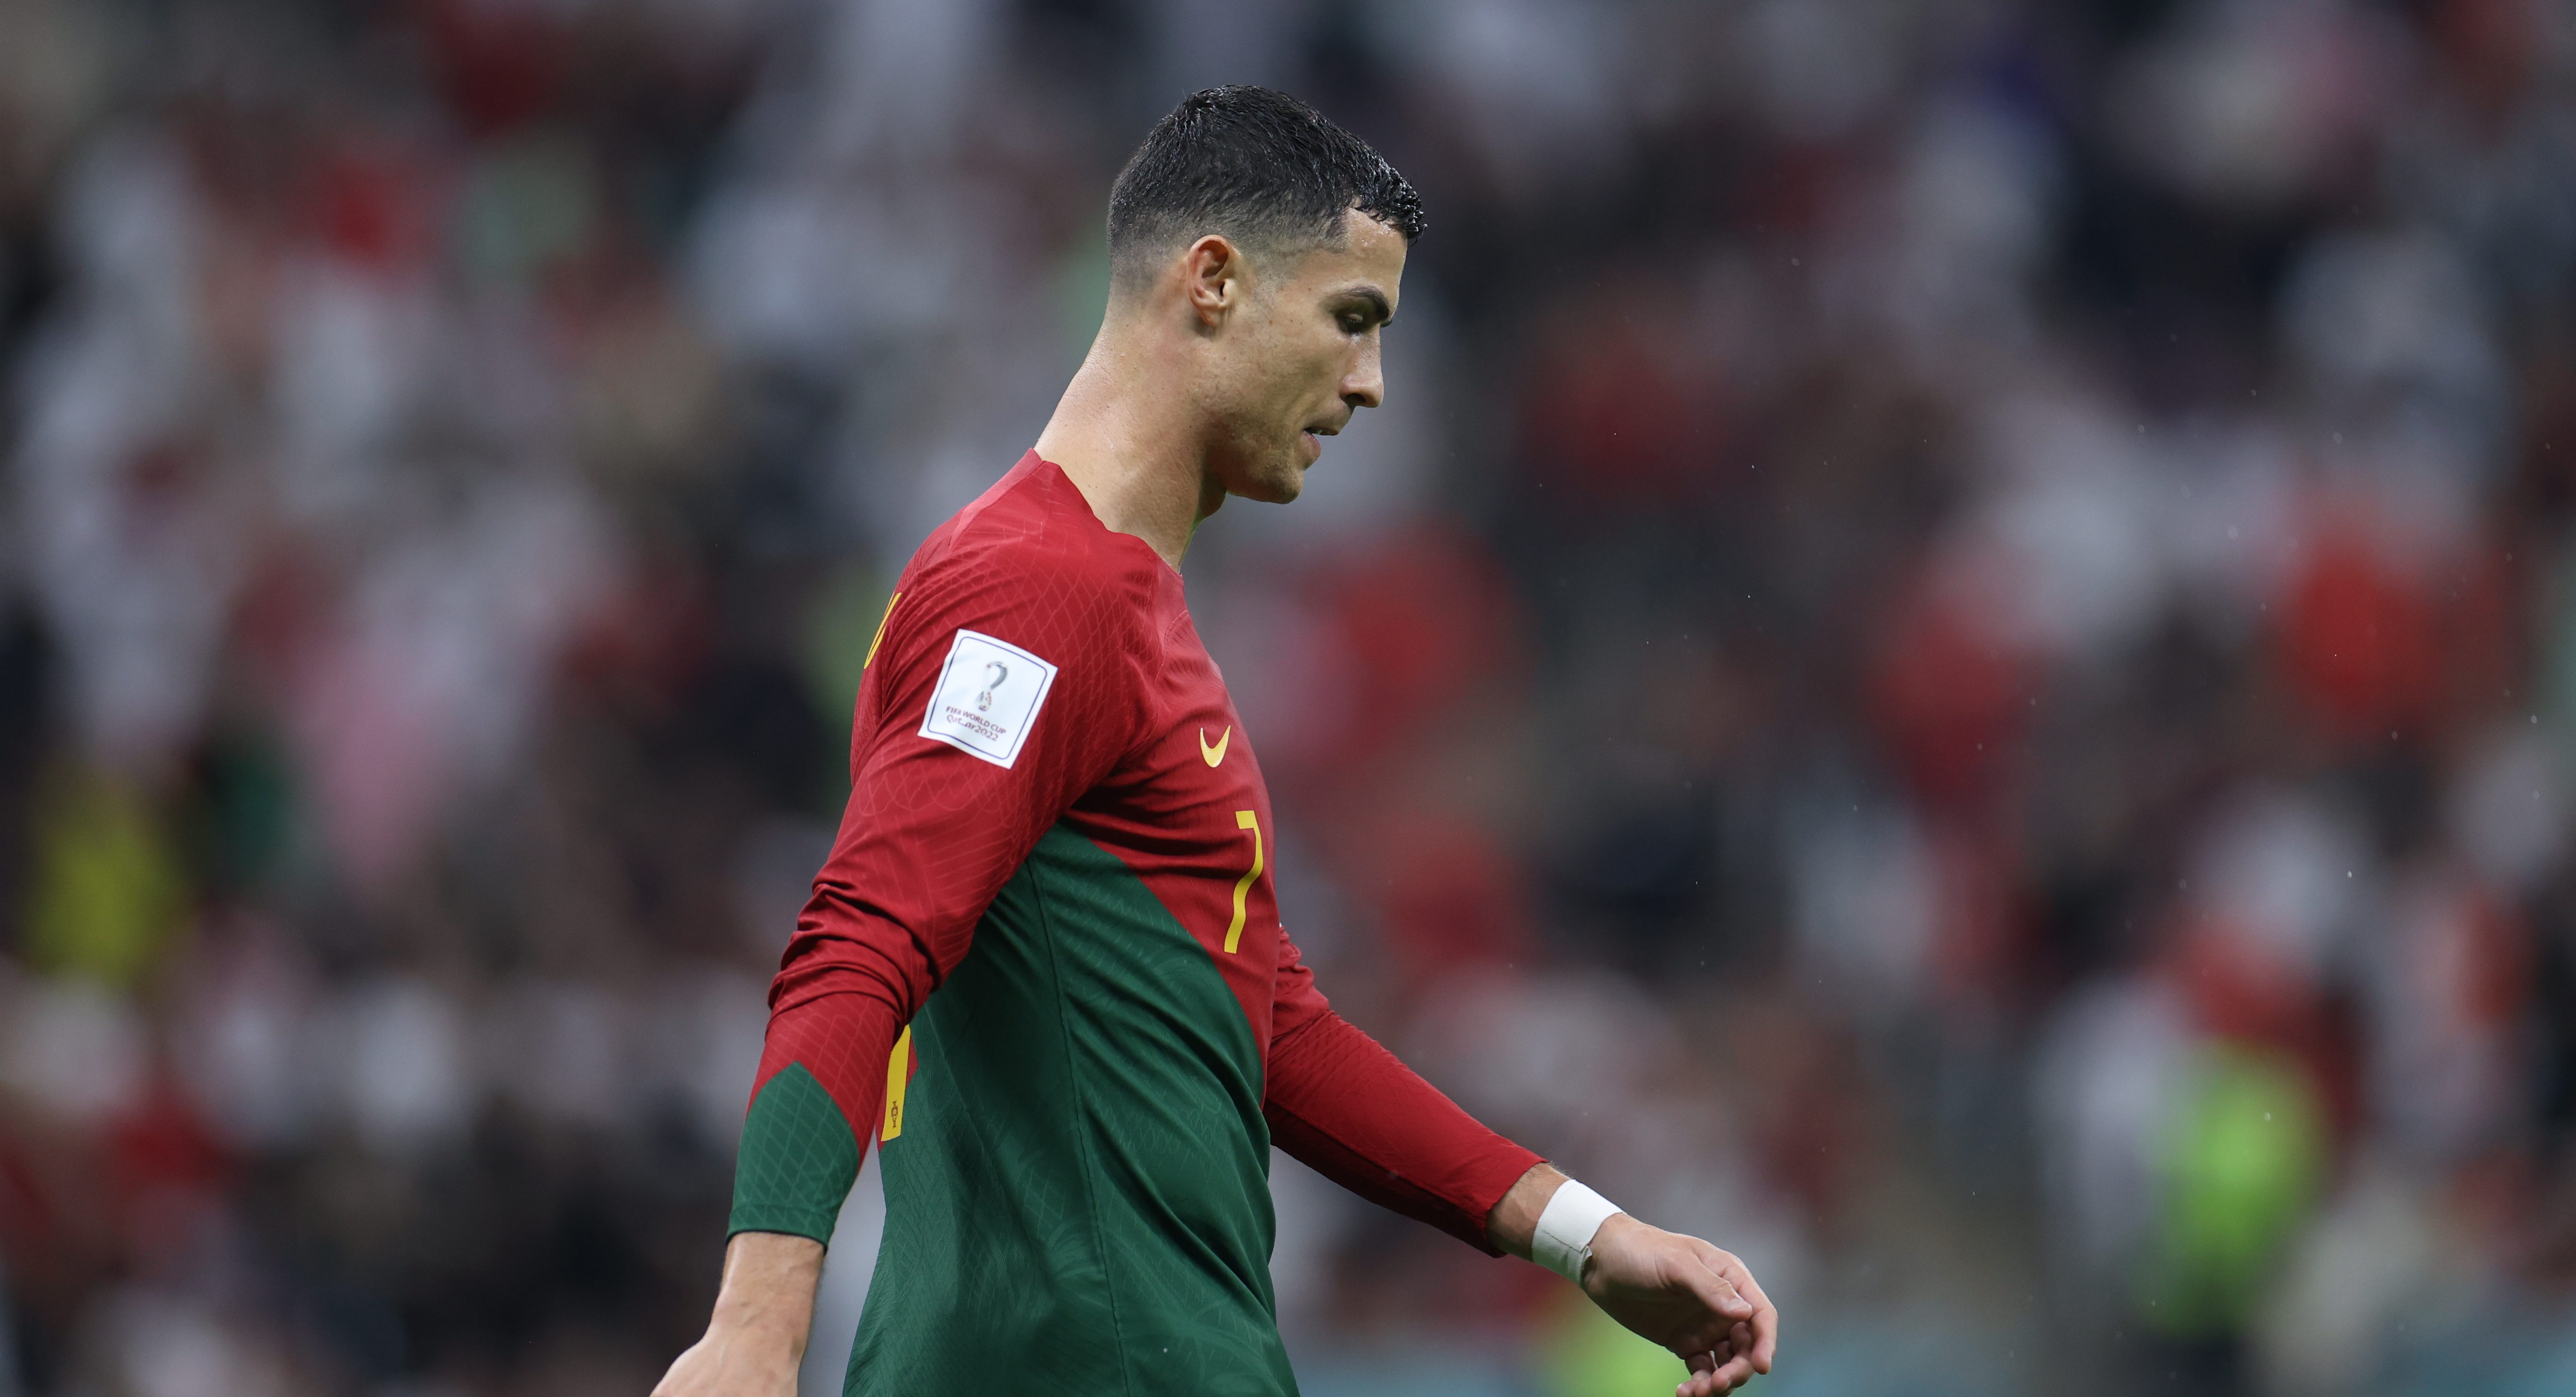 Will Cristiano Ronaldo Start for Portugal vs. Morocco in the World
Cup?